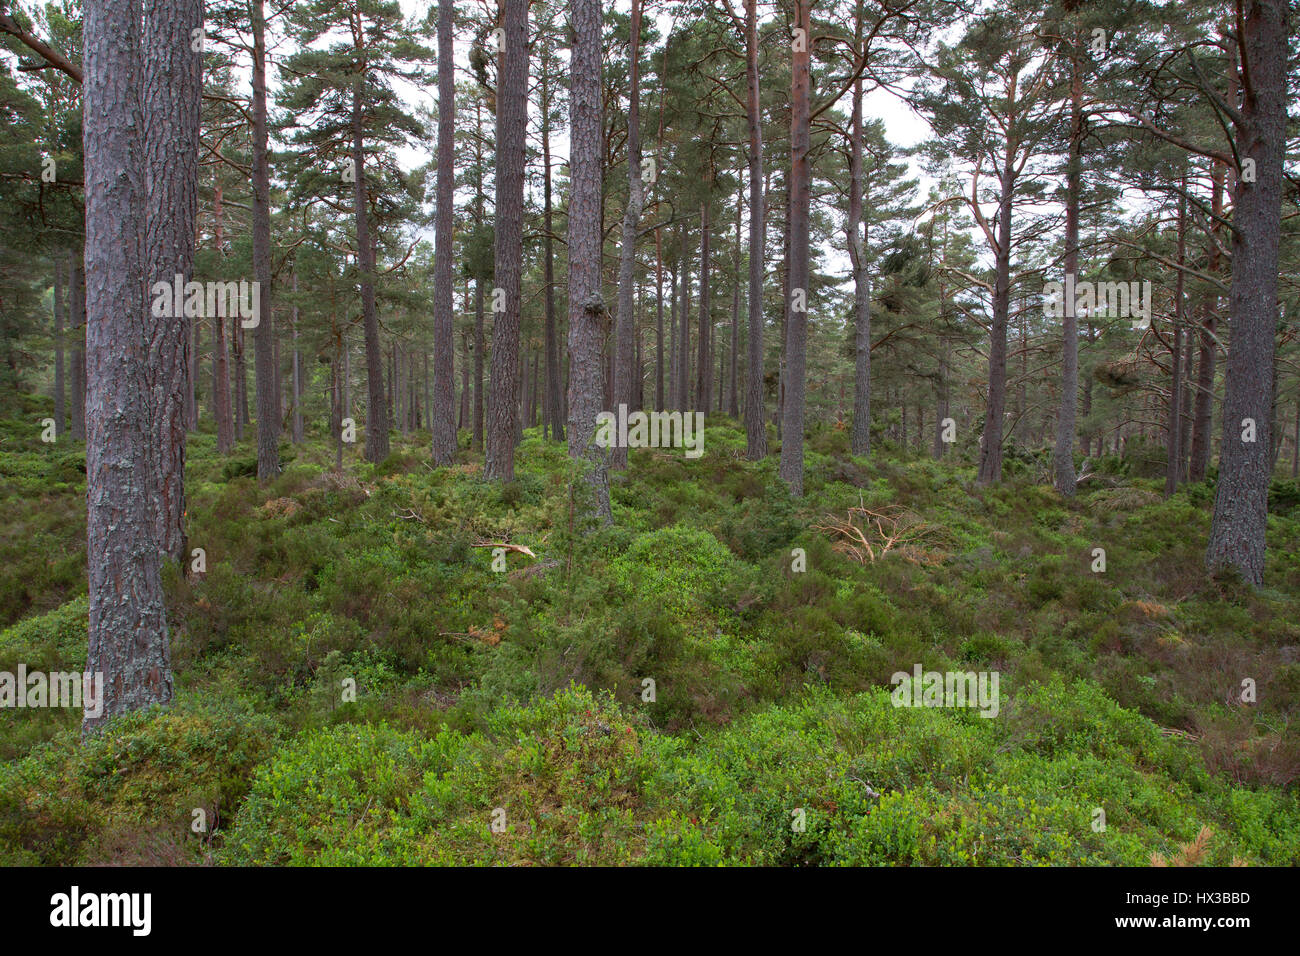 Pin sylvestre, Pinus sylvestris, poussant dans les bois. Rothiemurchus, Ecosse, Royaume-Uni Banque D'Images